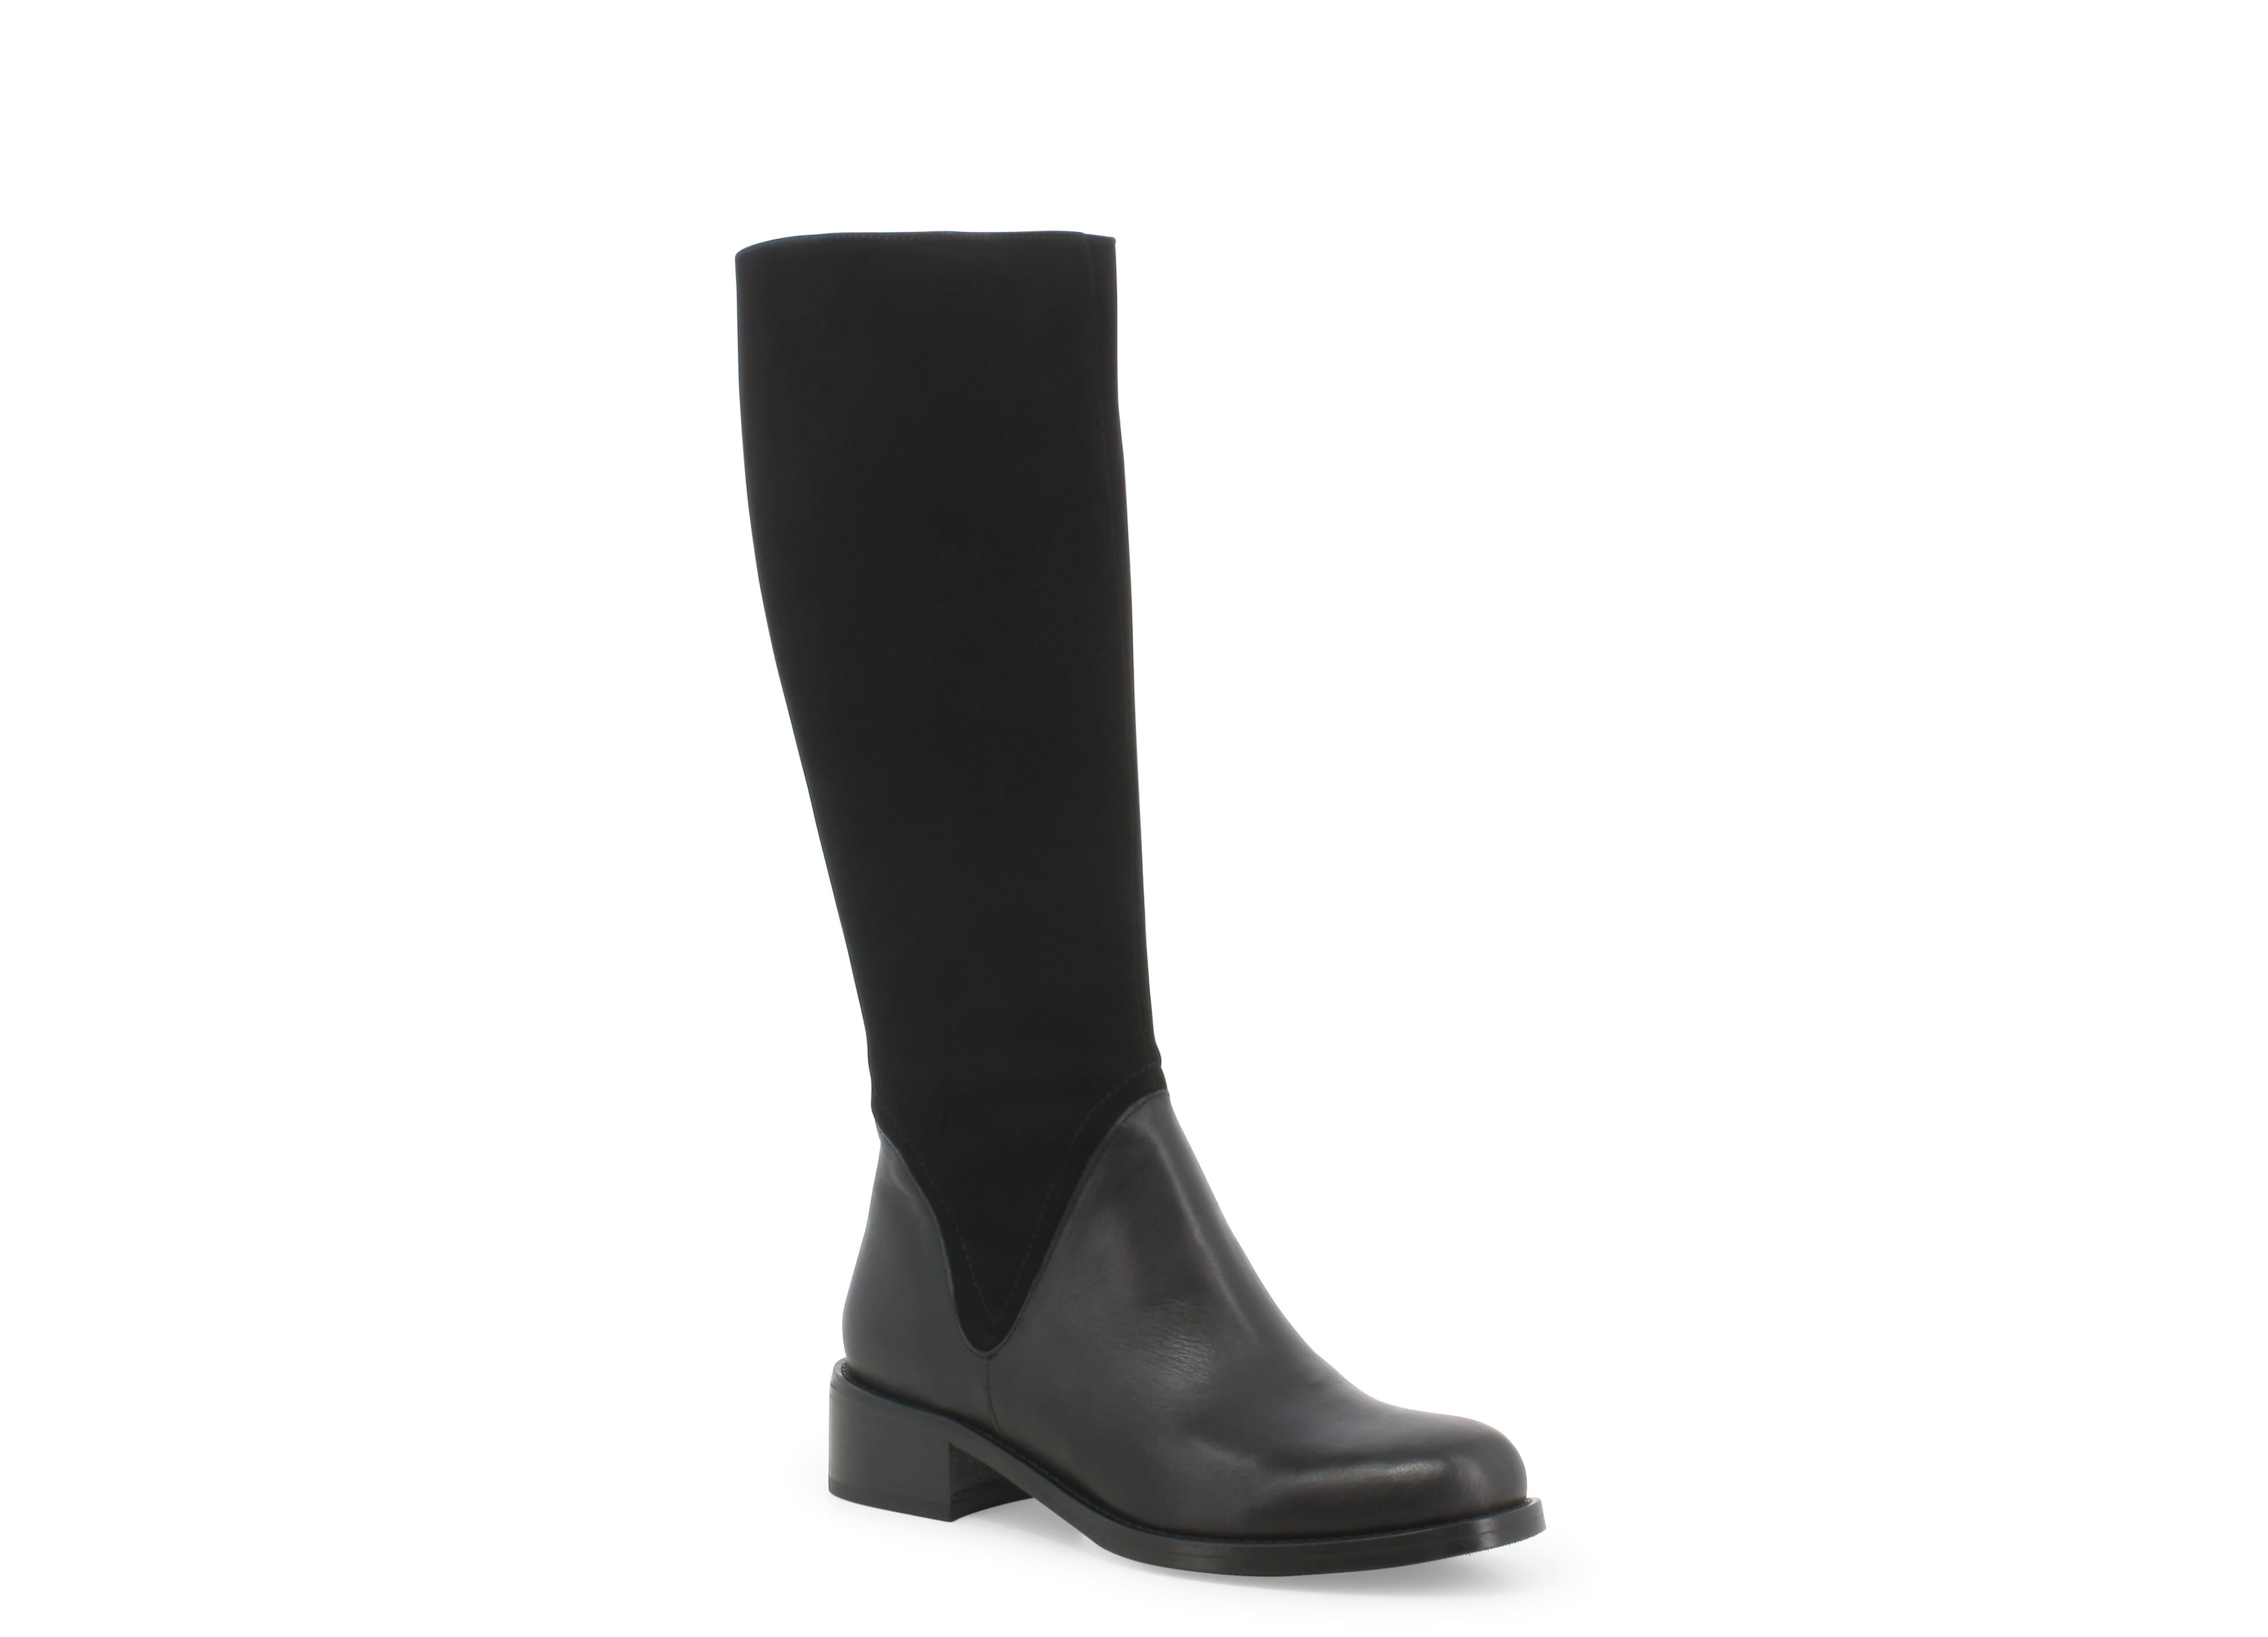 Boots: Stivale donna in pelle e camoscio nero k37005